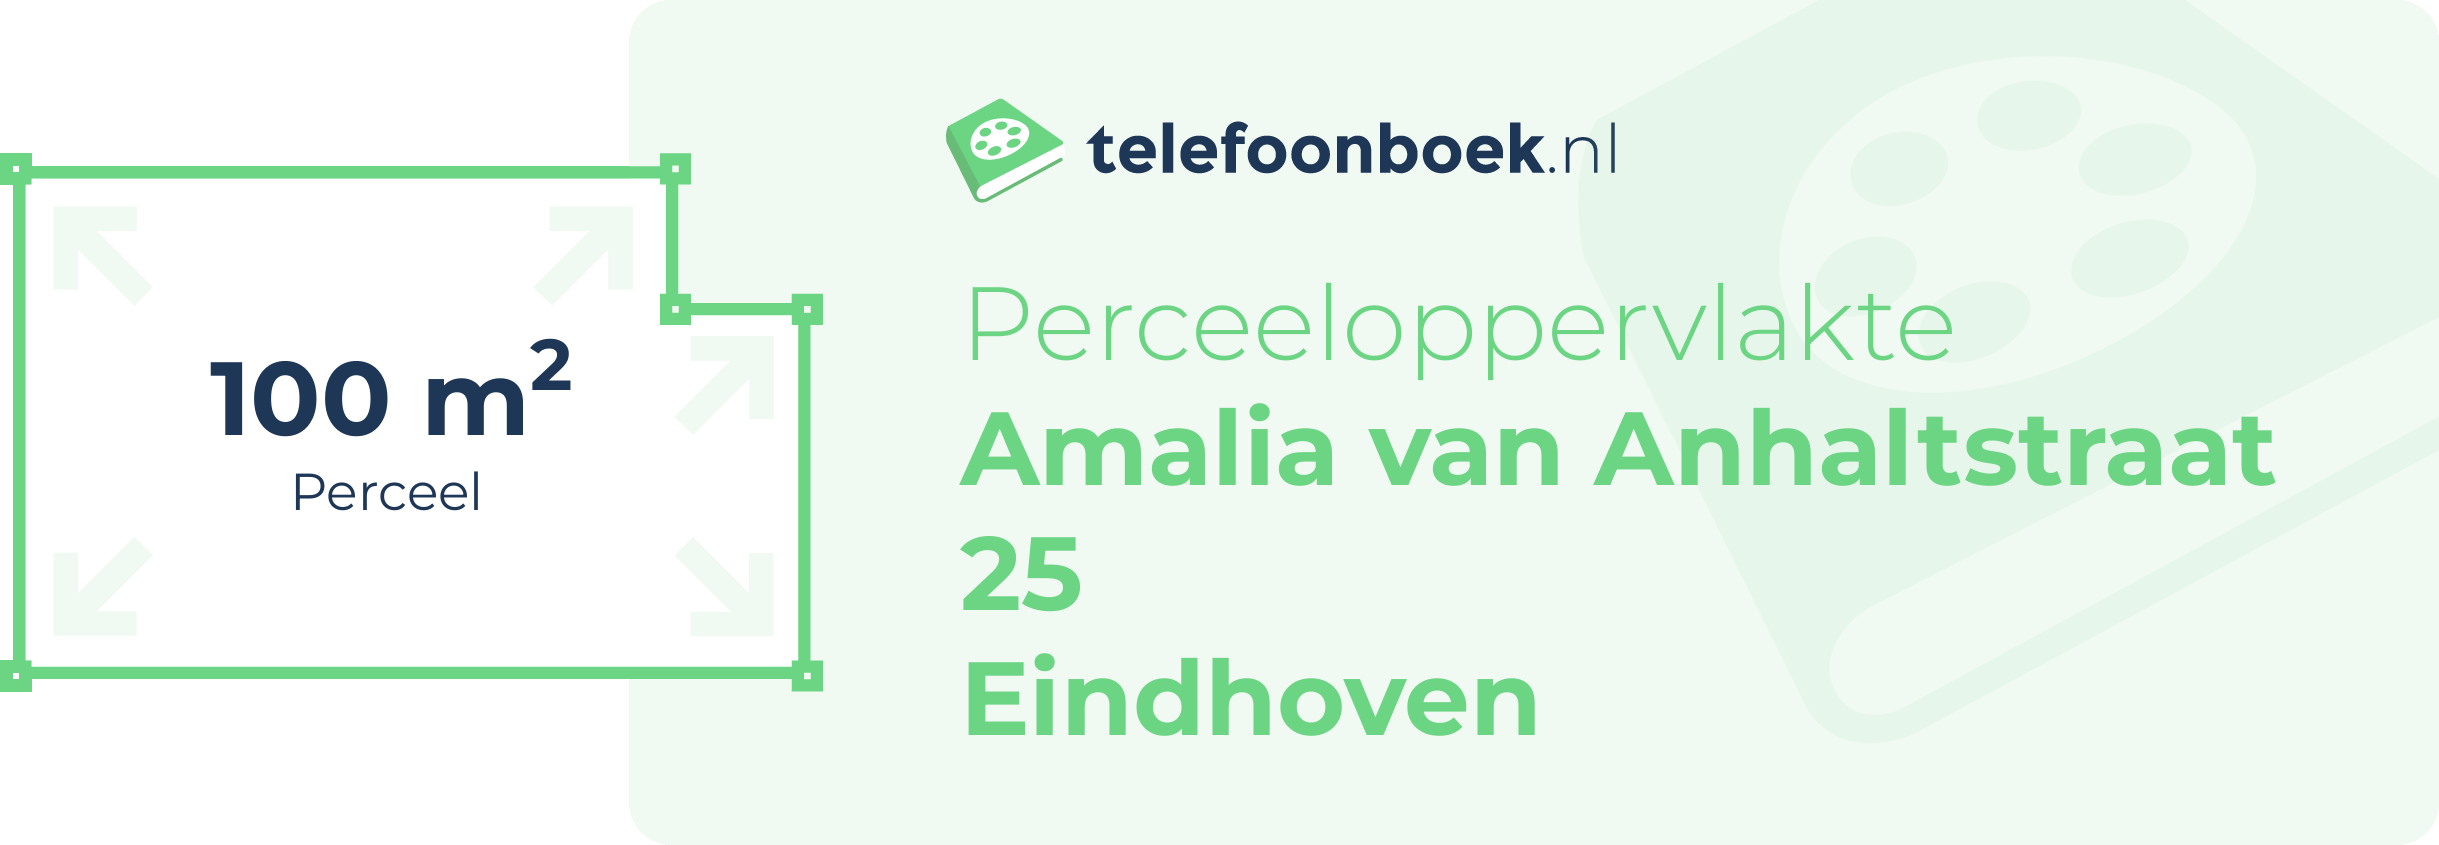 Perceeloppervlakte Amalia Van Anhaltstraat 25 Eindhoven